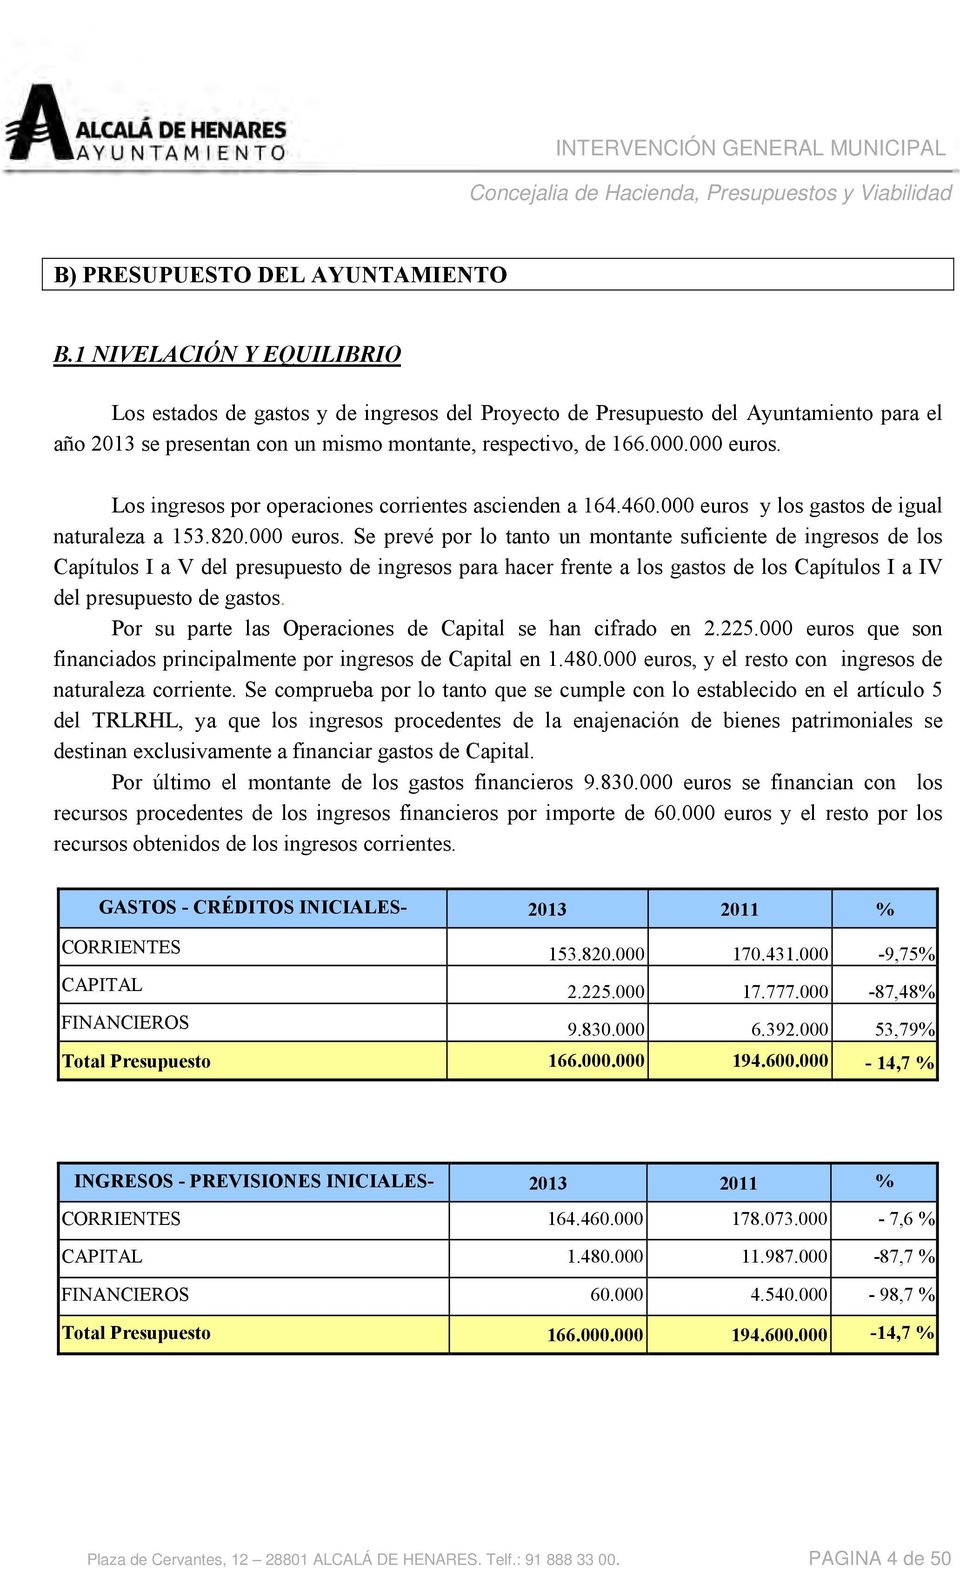 Los ingresos por operaciones corrientes ascienden a 164.460.000 euros 